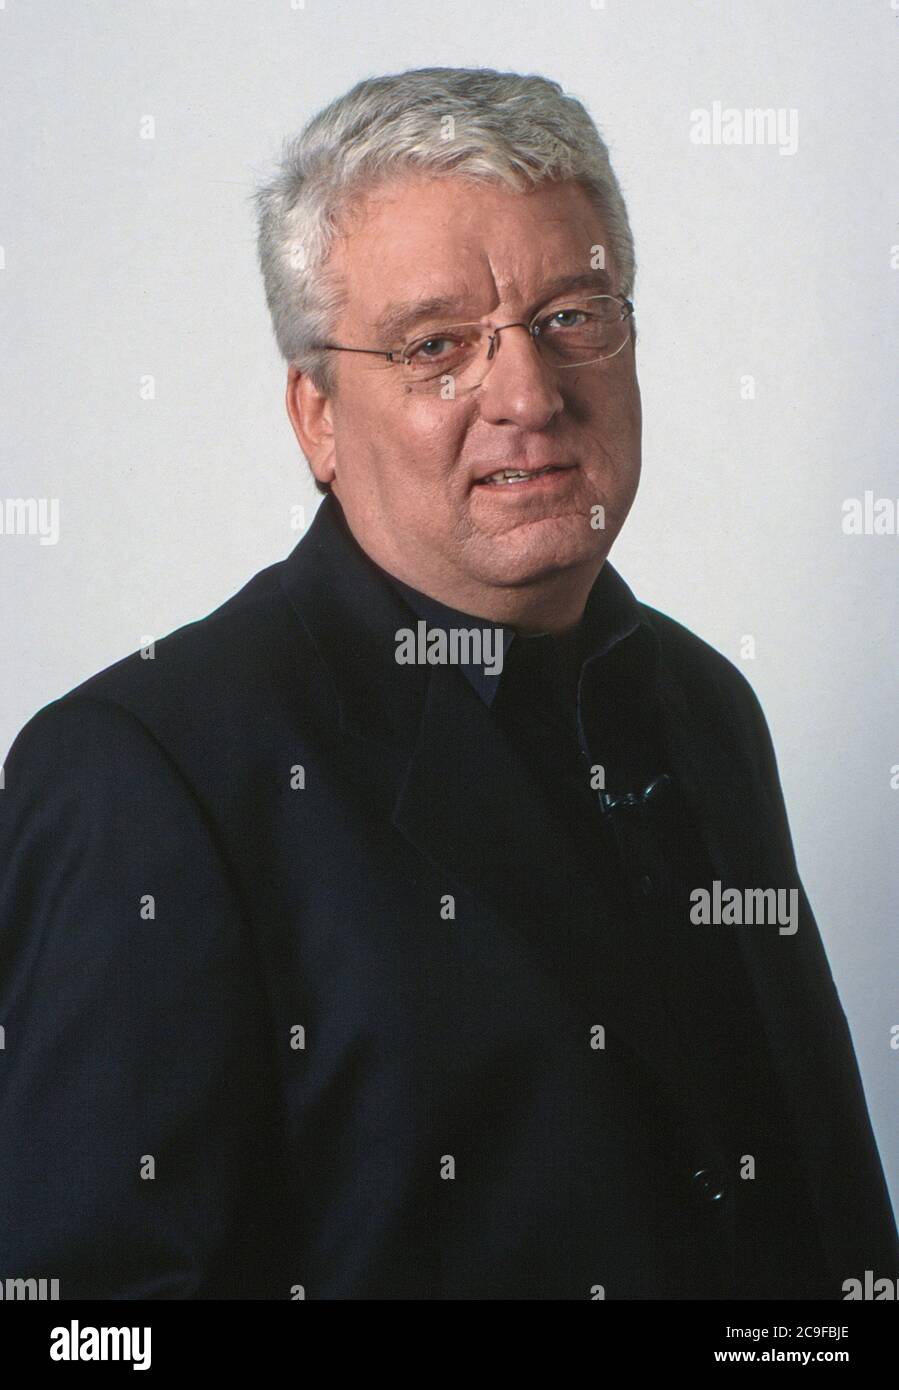 Hans Meiser, giornalista deutscher und Fernsehmoderator, bei einem Fotoshooting in Köln, Deutschland 1999. Foto Stock